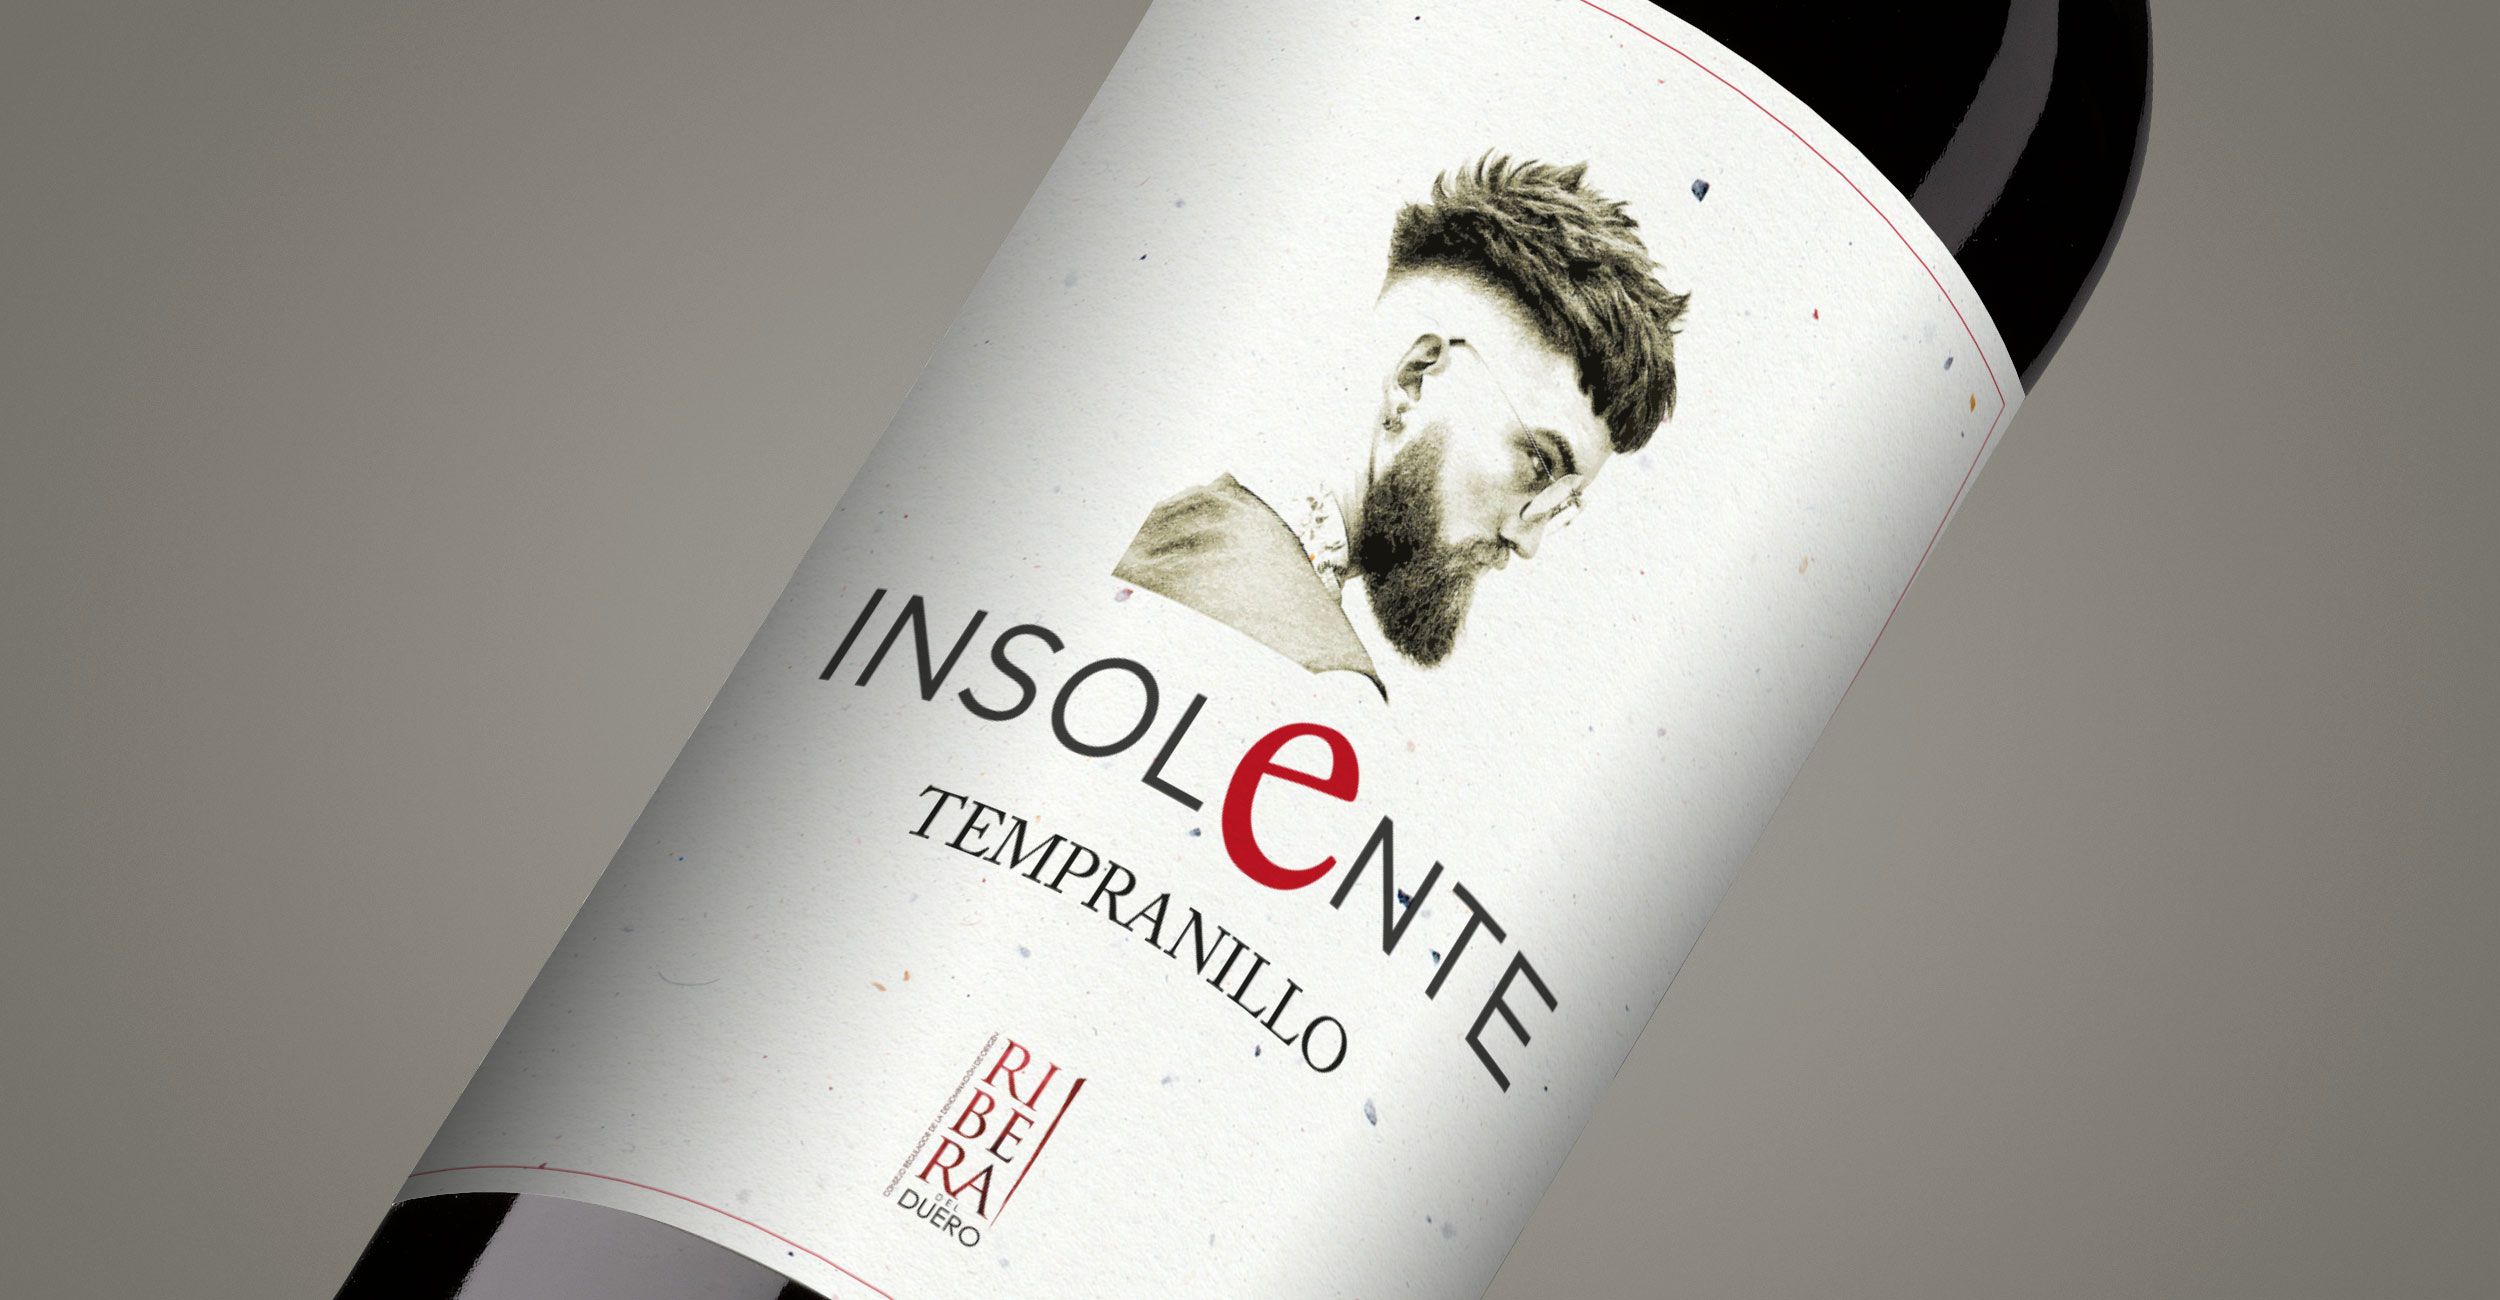 Diseño gráfico y creativo de etiquetas formato sleeve y packaging de vino para INSOLENTE